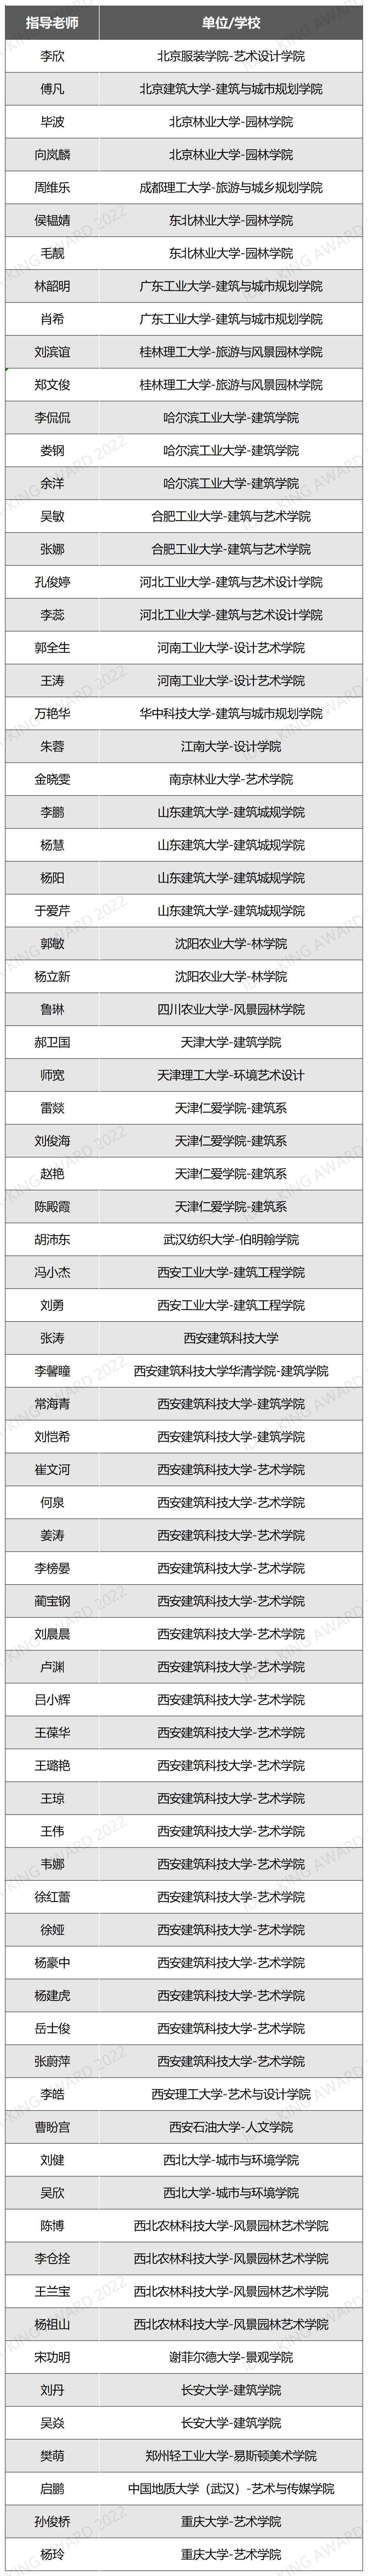 学生组-终审列表_D1E78(1).jpg